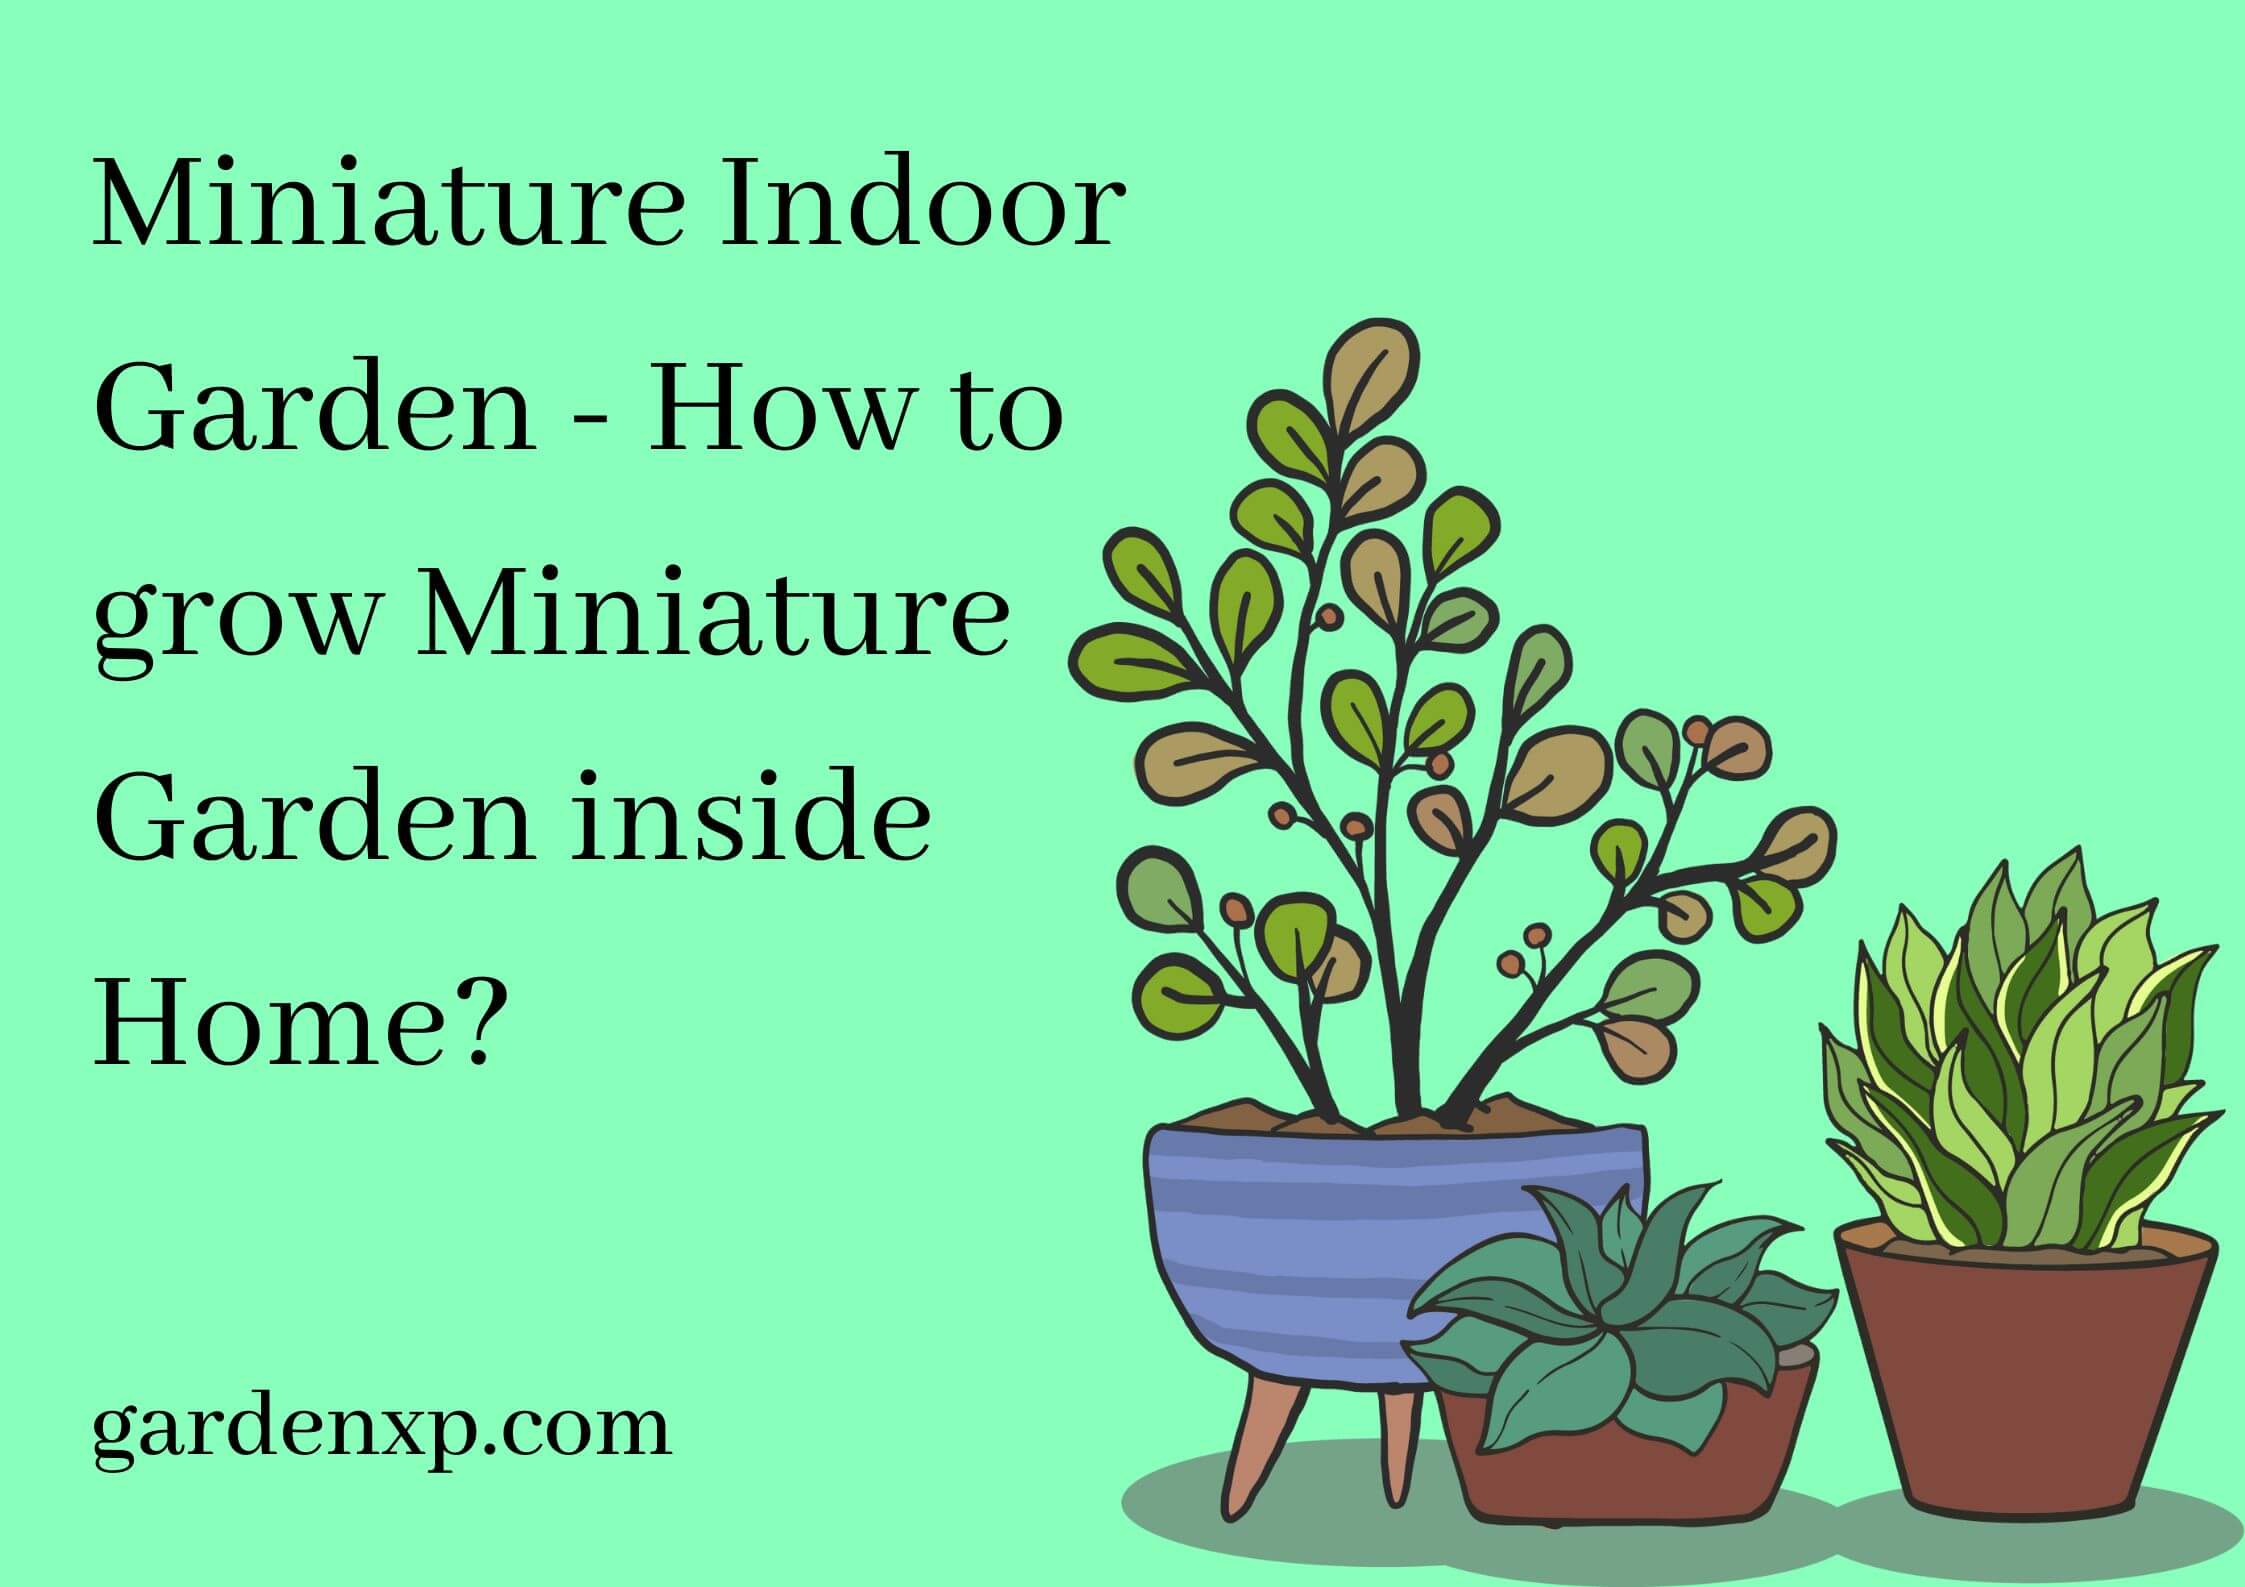 Miniature Indoor Garden - How to grow Miniature Garden inside Home?